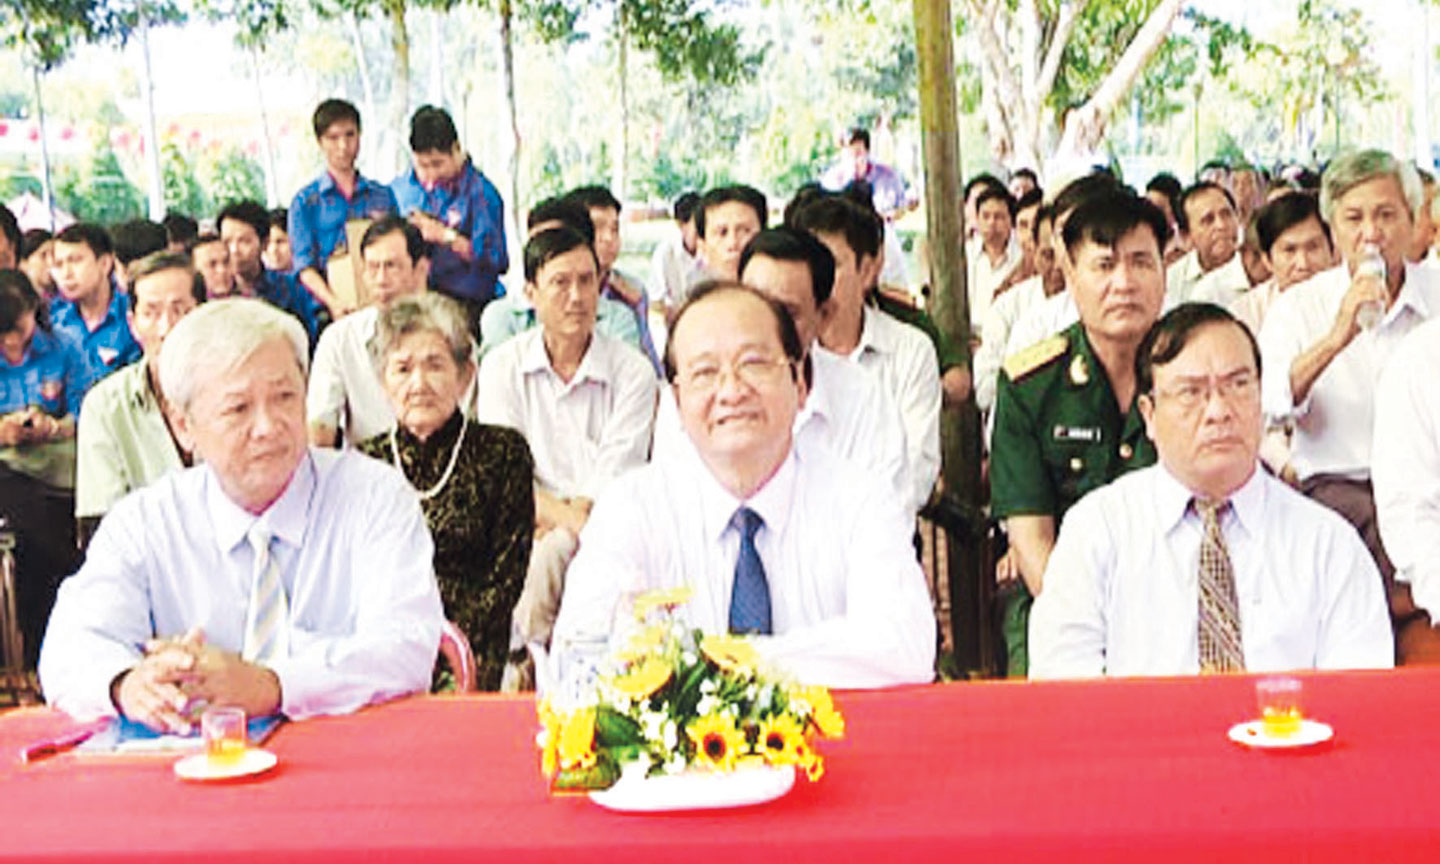 Lãnh đạo tỉnh Tiền Giang  dự lễ kỷ niệm 75 năm ngày Nam kỳ khởi nghĩa (23-11-1940 – 23-11-2015).